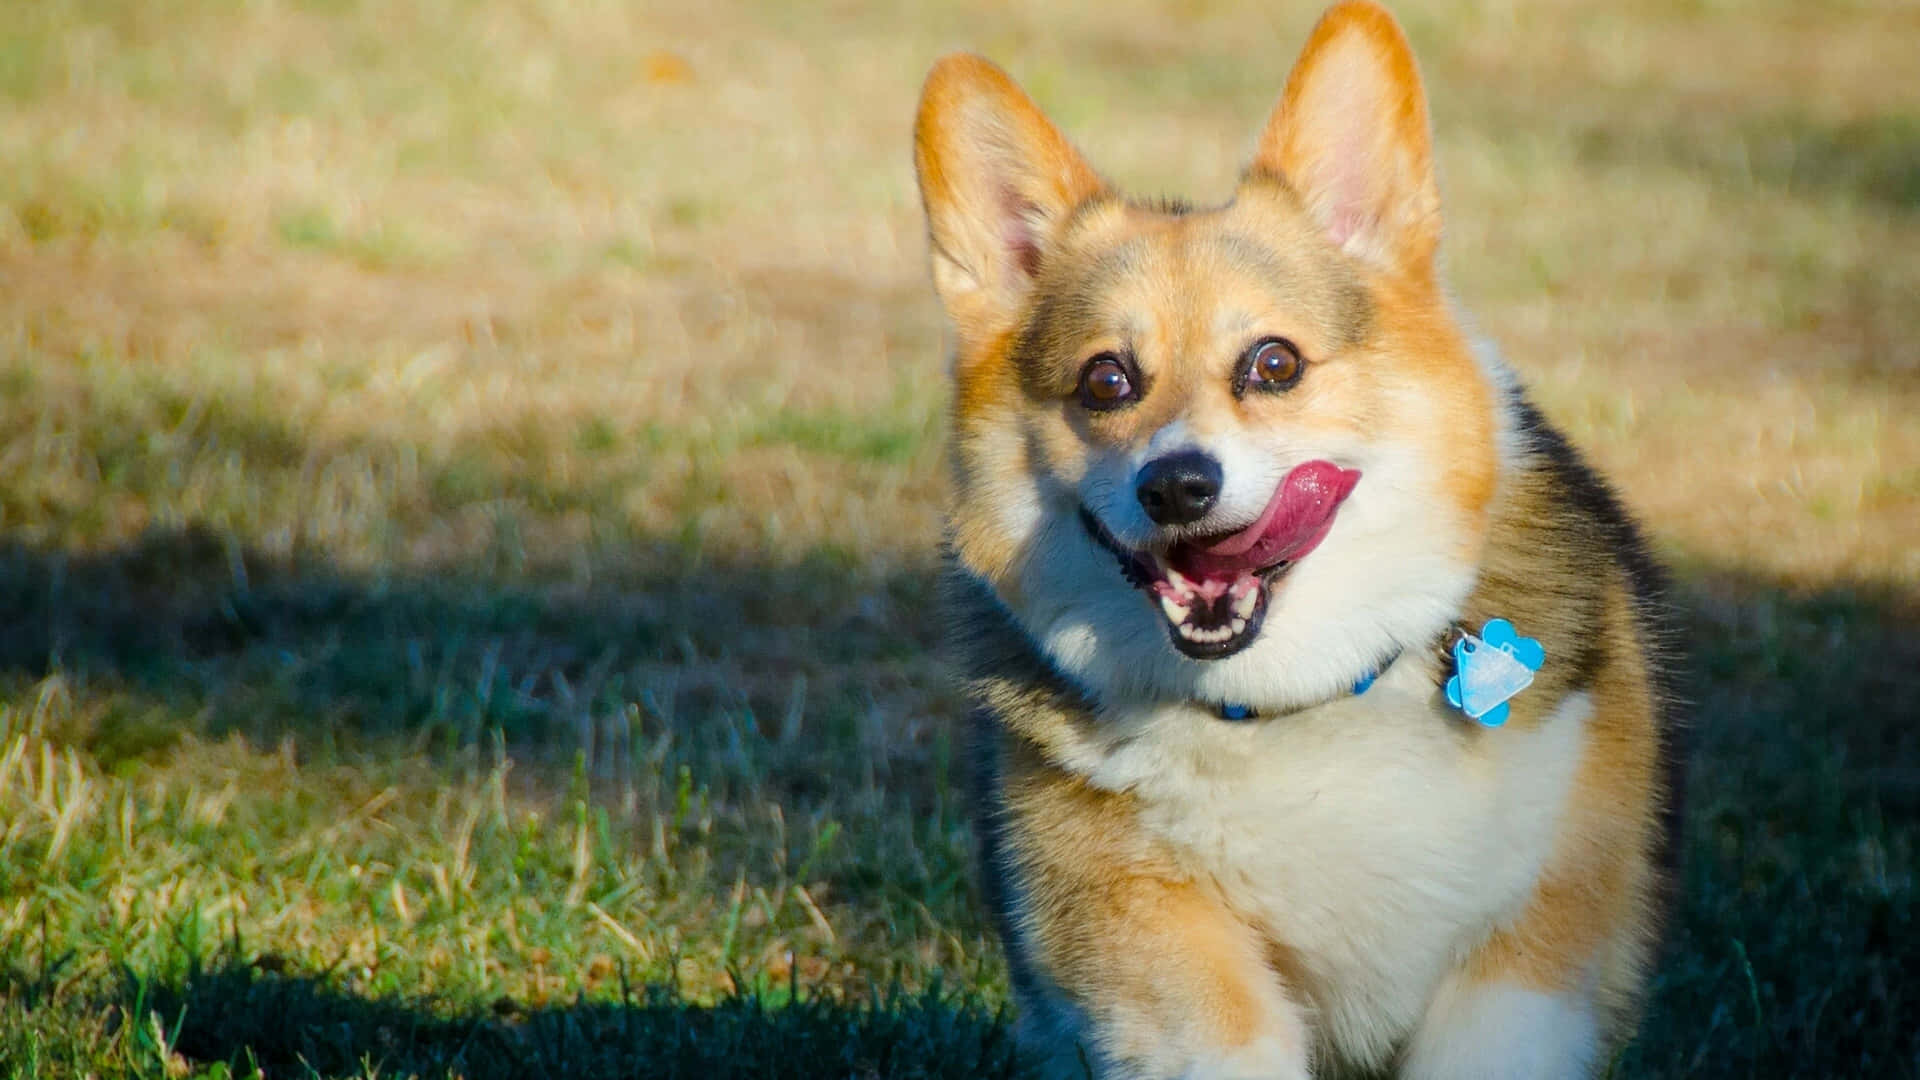 Lustigesbild Eines Corgi-hunds Mit Heraushängender Zunge.